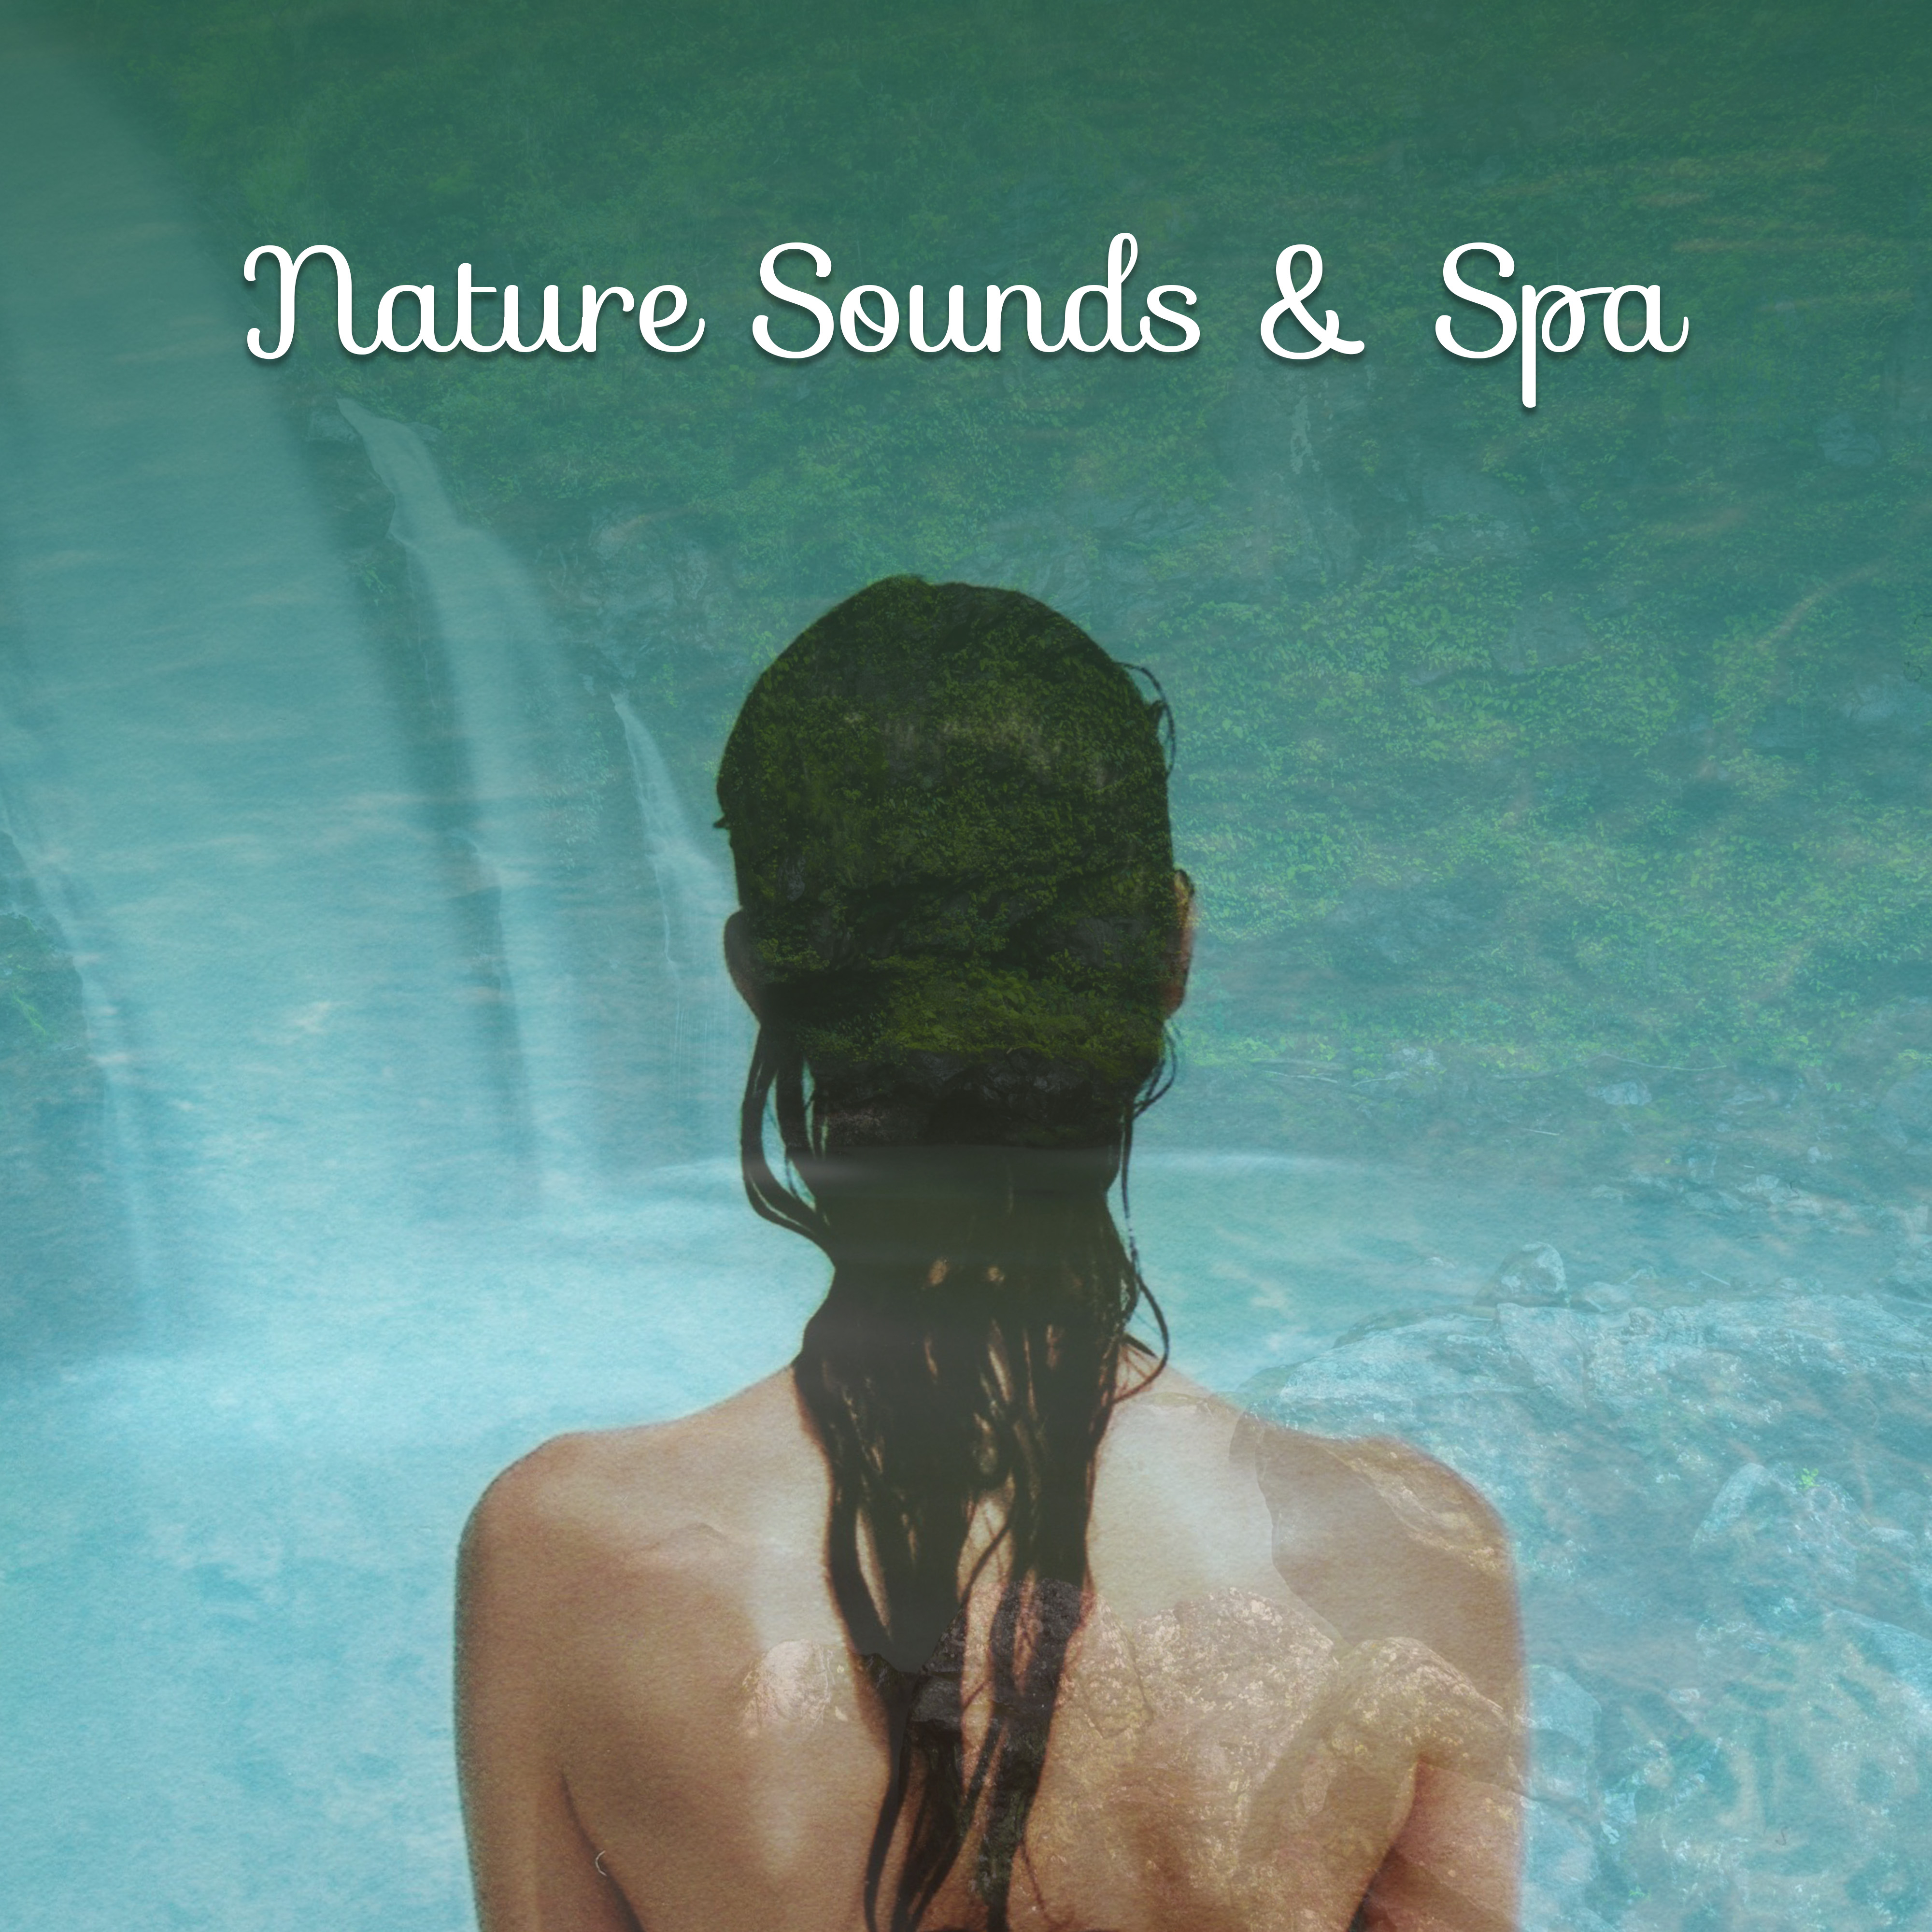 Nature Sounds & Spa – Healing Music, Deep Sleep, Pure Massage, Relaxation Waves, Spa Music, Restful Wellness, Calmness